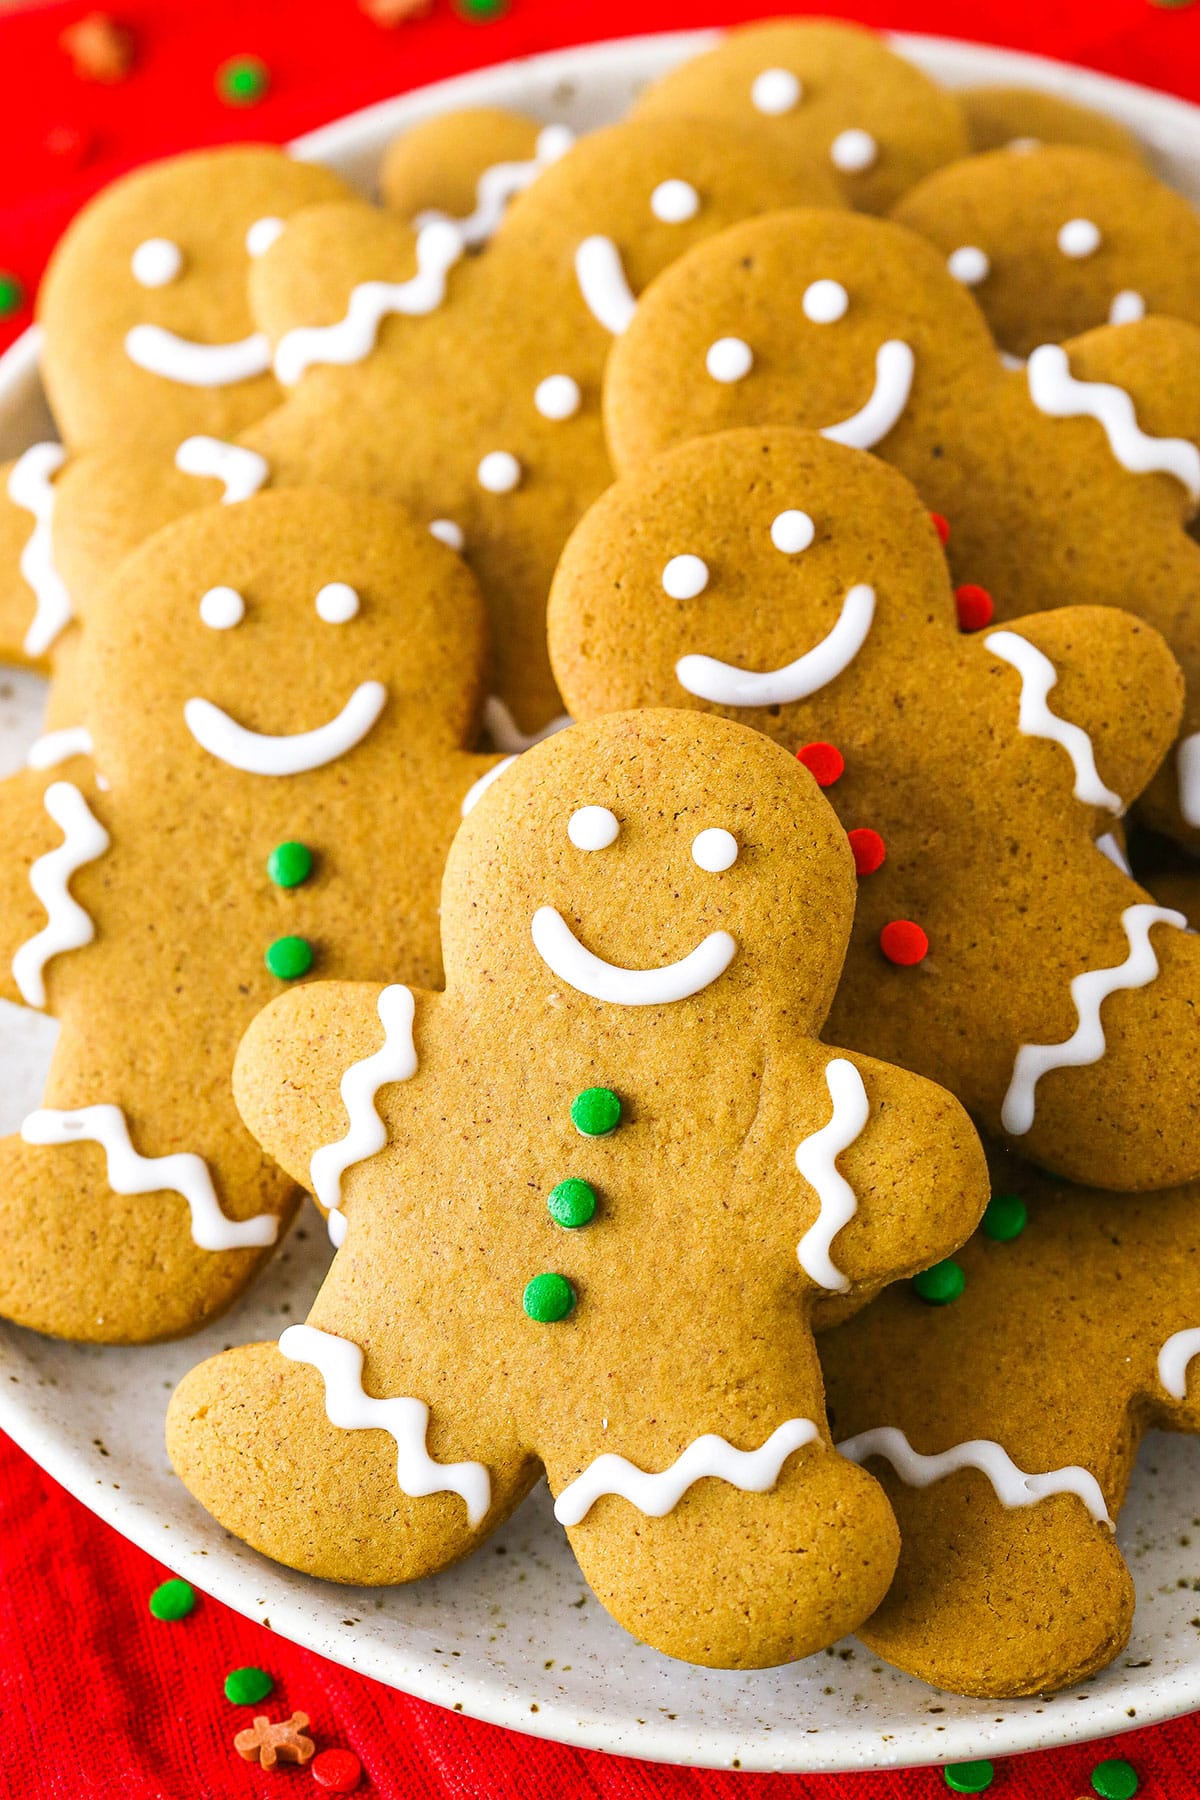 https://www.lifeloveandsugar.com/wp-content/uploads/2023/03/Gingerbread-Cookies5E.jpg